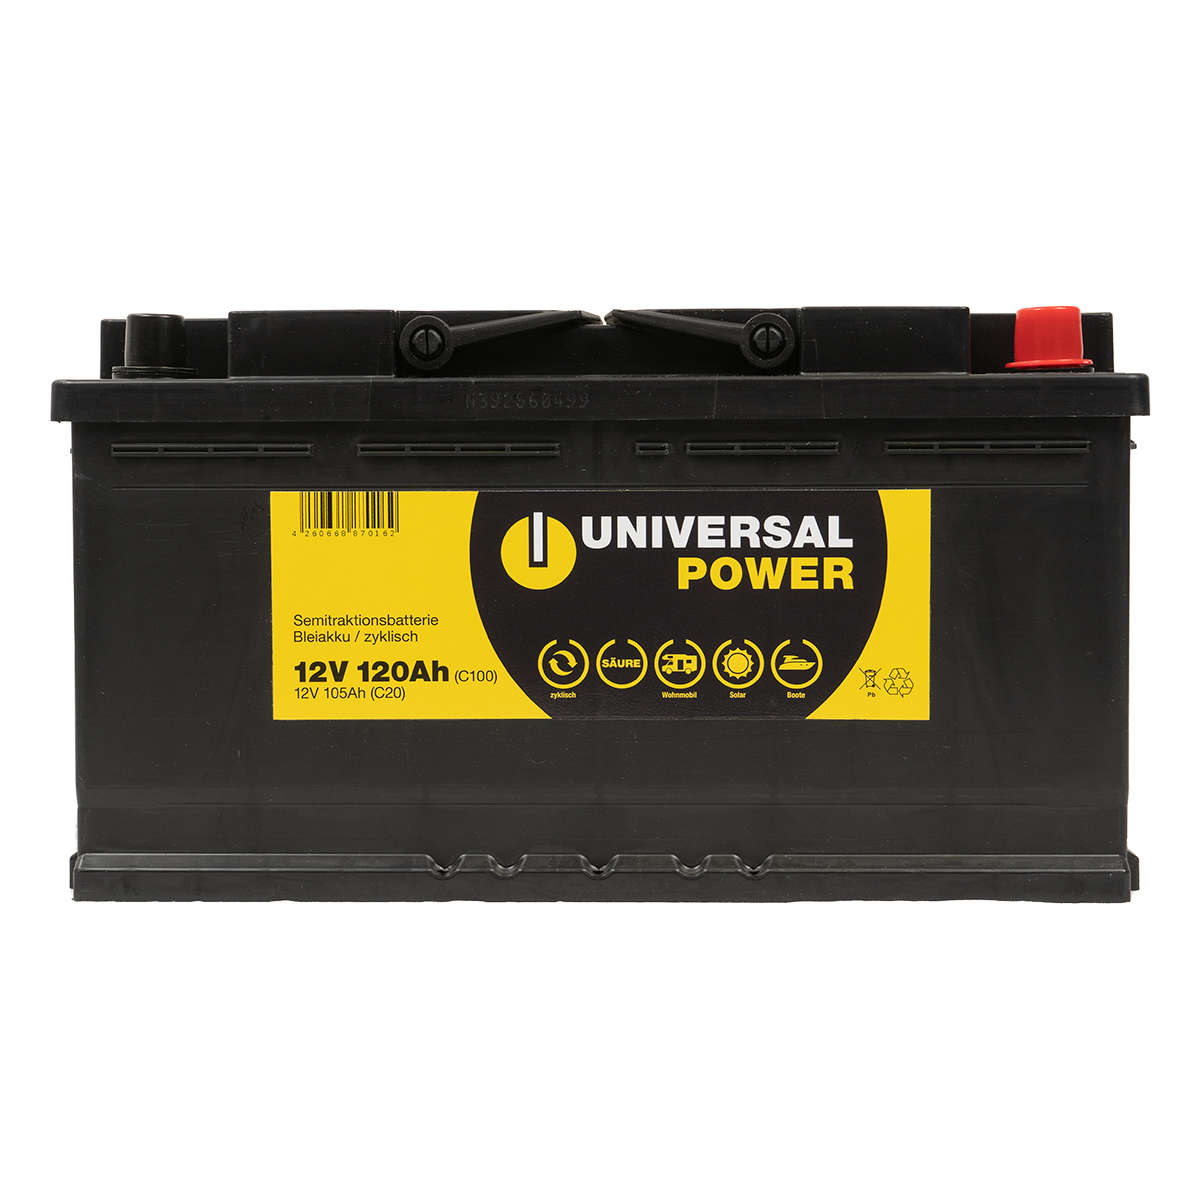 Universal Power UPA12-120 Solar Batterie Wohnmobilbatterie 12V 120Ah (C100) zyklenfest